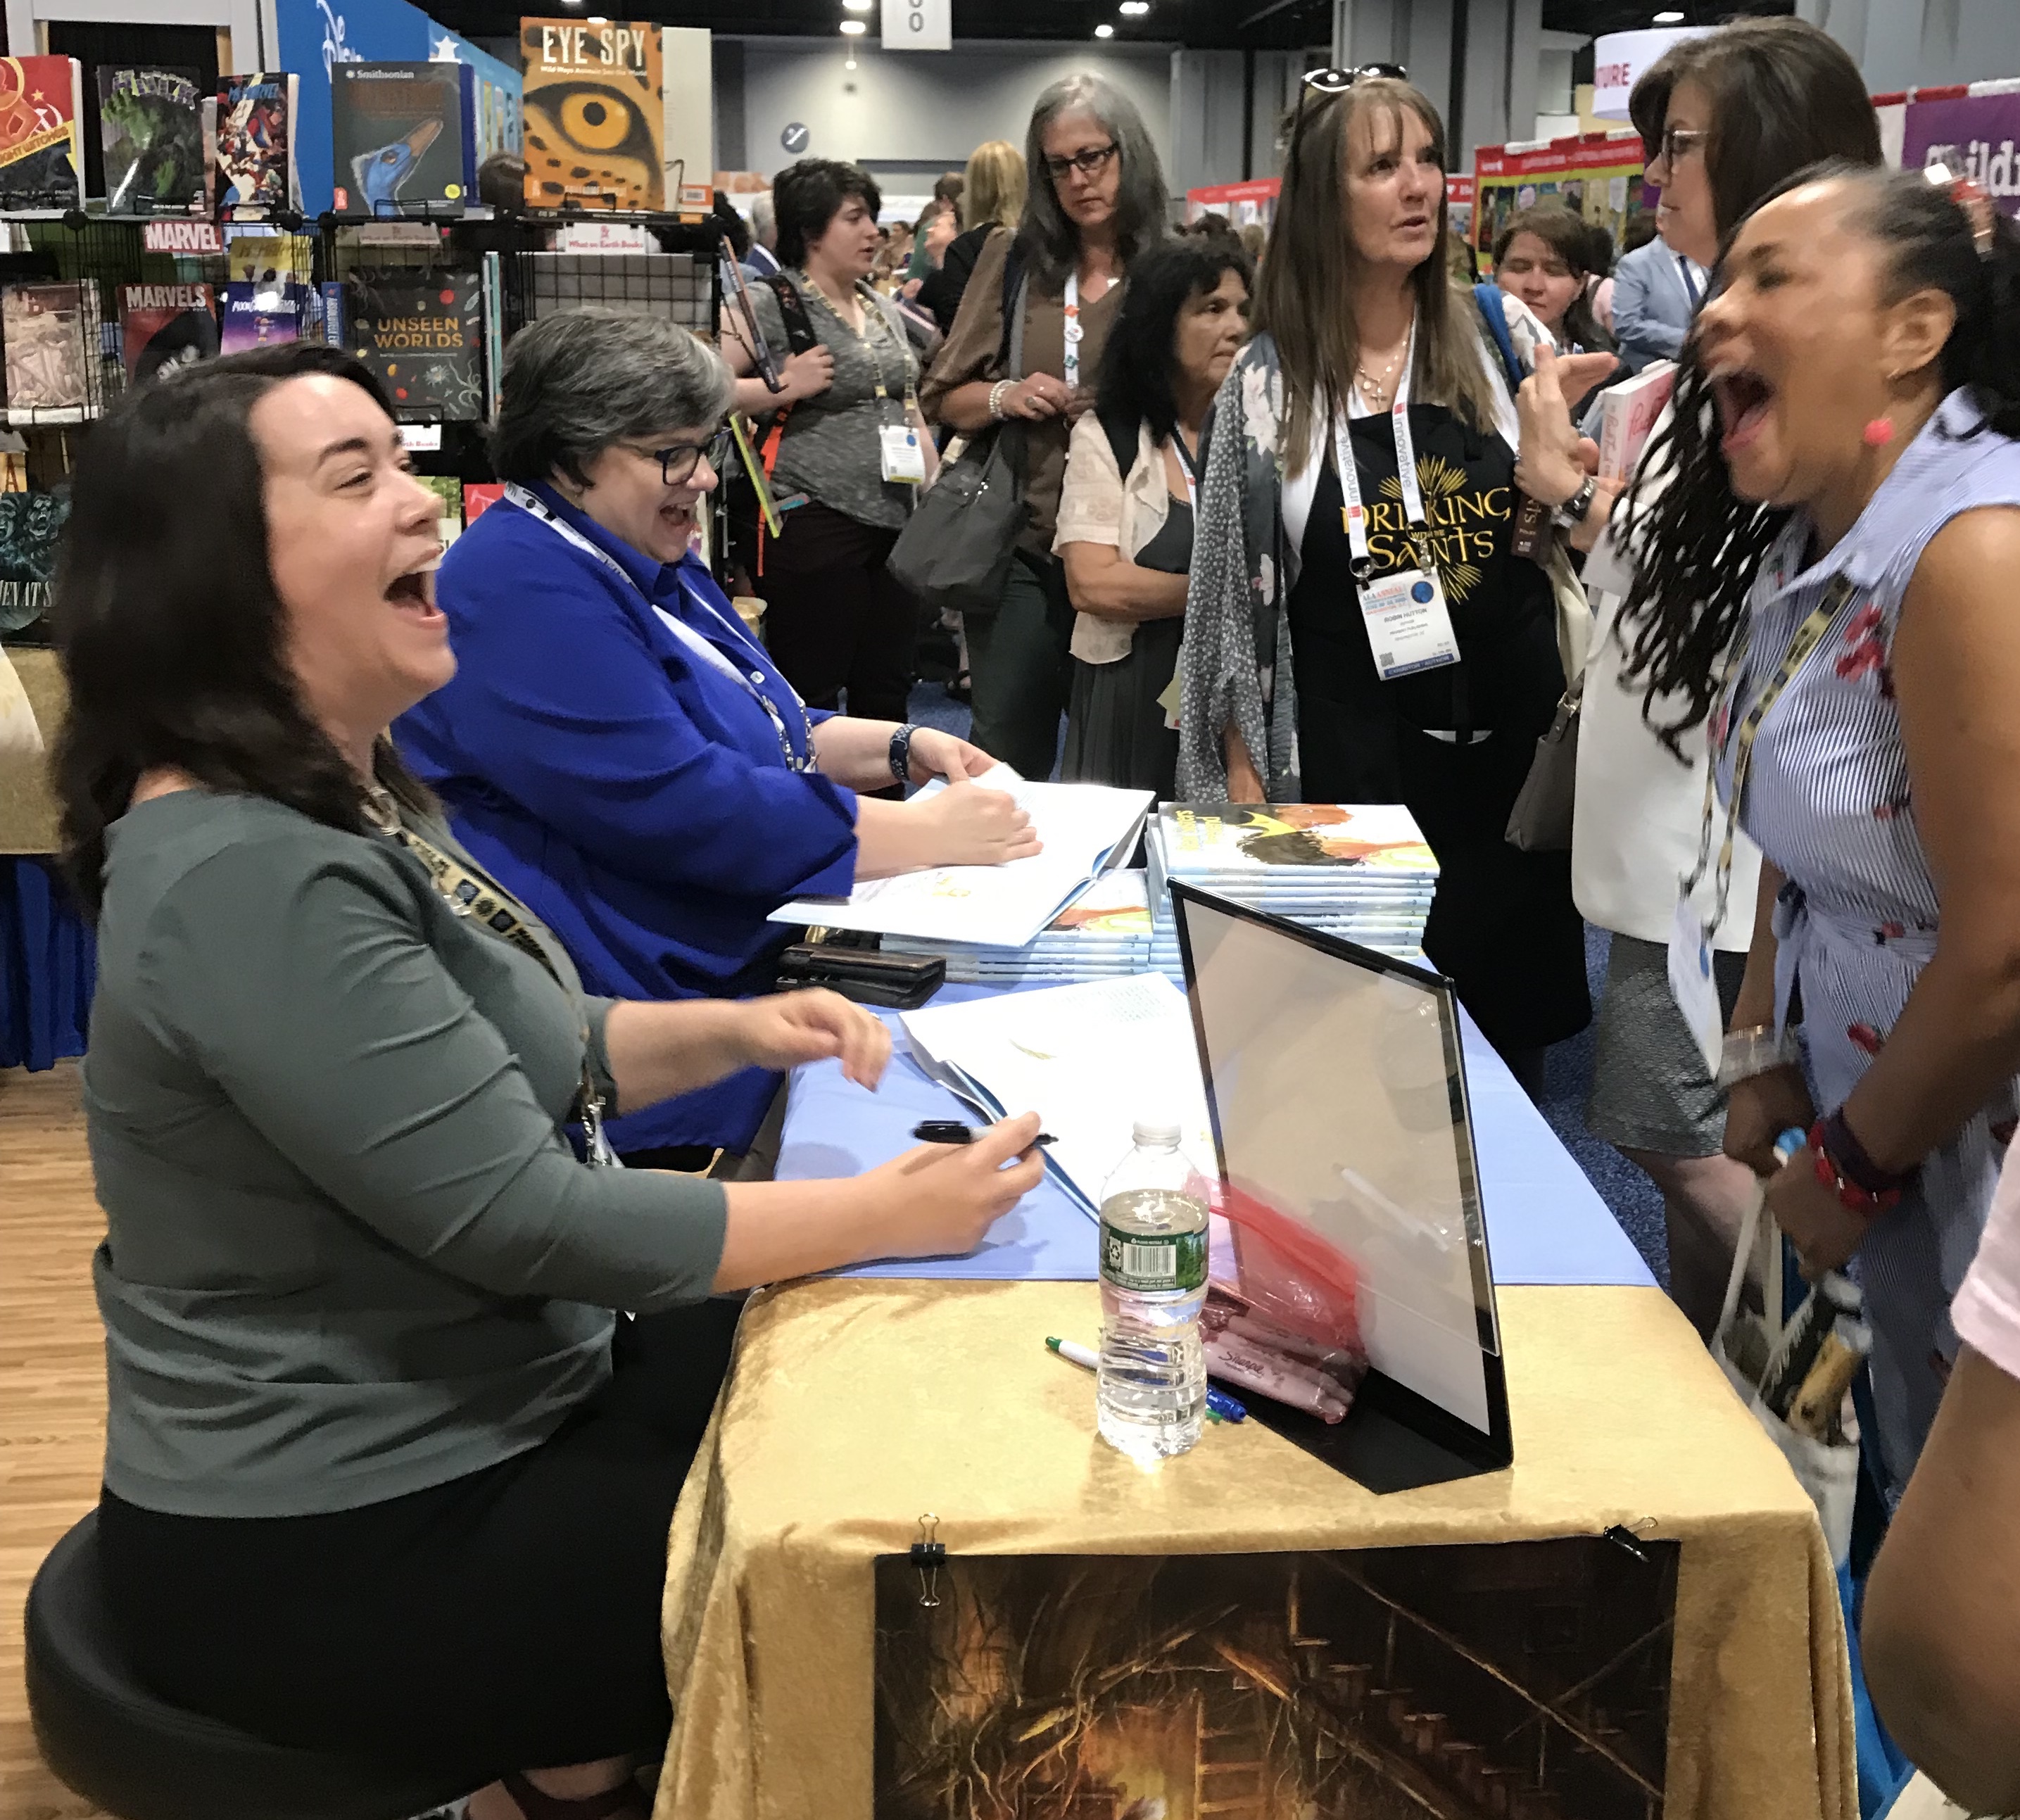 Author Megan Dowd Lambert meets a fan